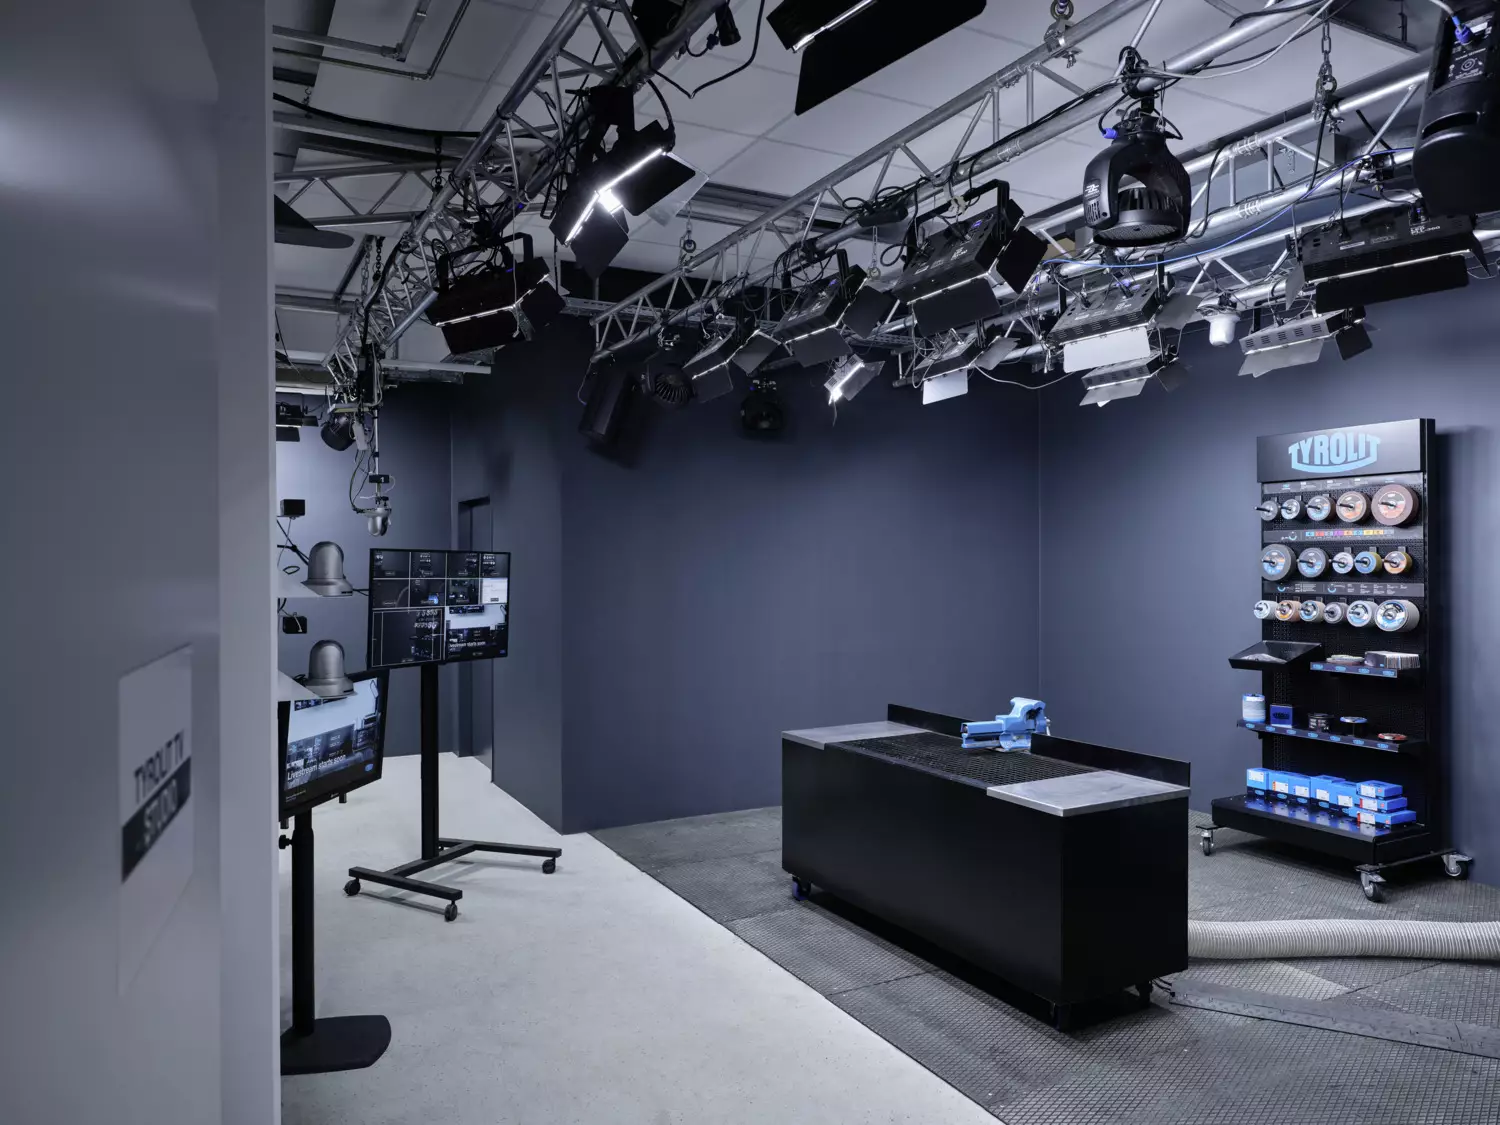 Tyrolit TV Studio